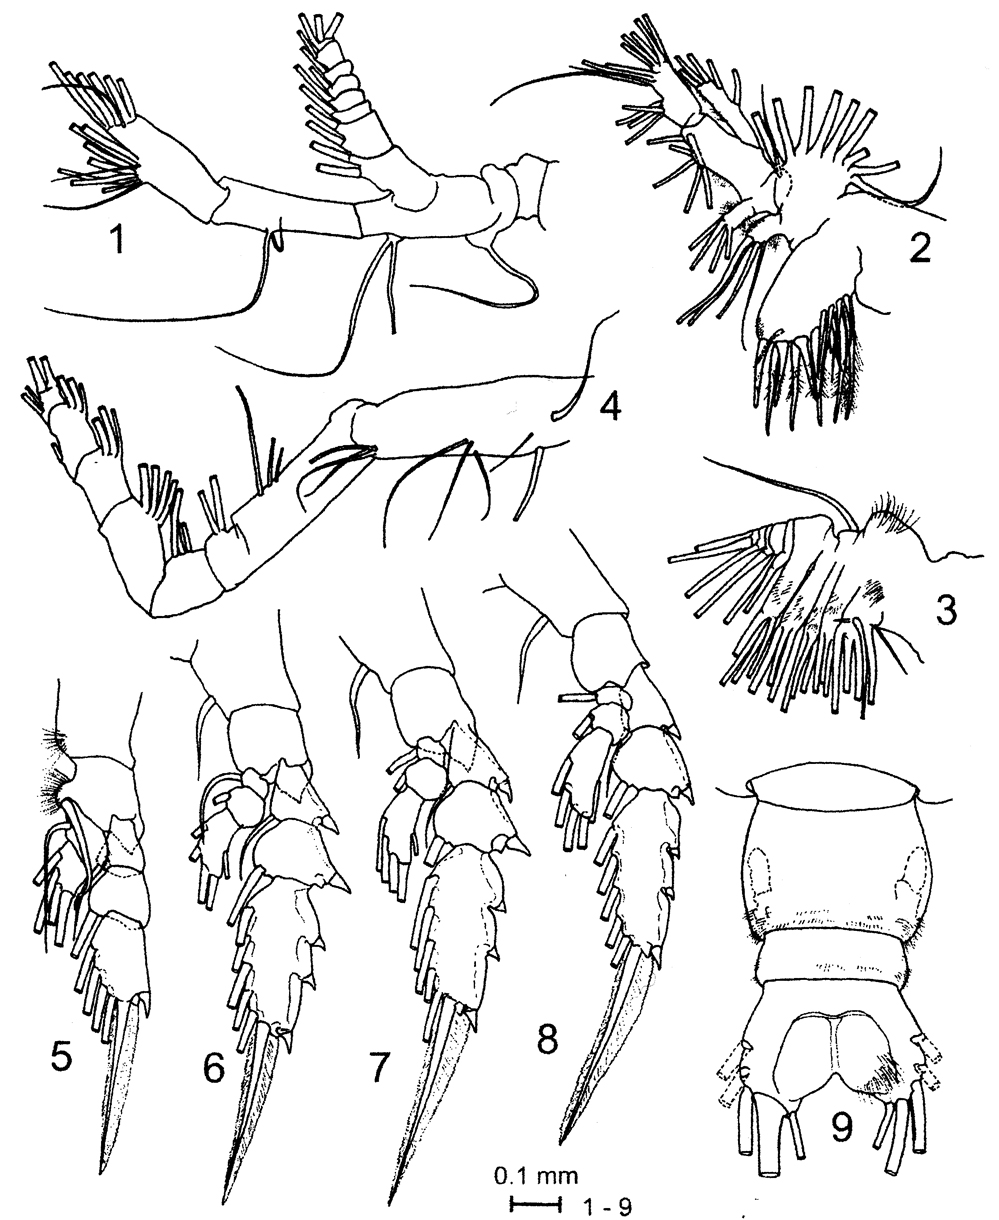 Espèce Pareucalanus smithae - Planche 2 de figures morphologiques